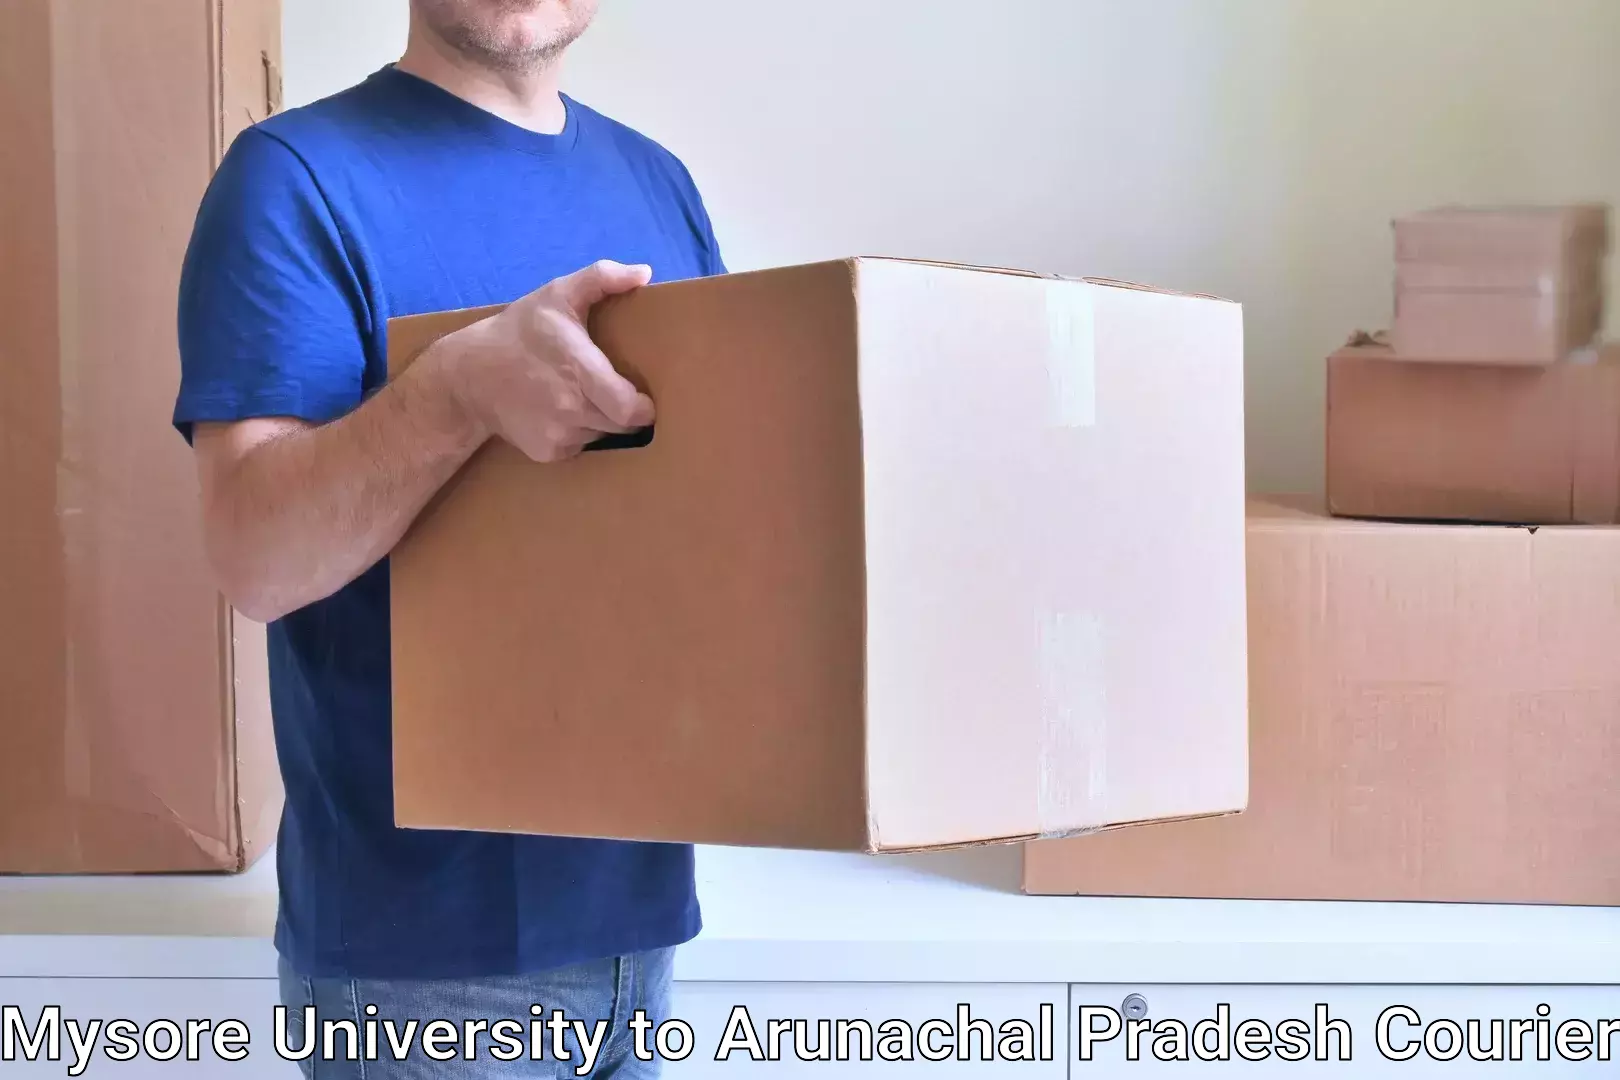 Package tracking Mysore University to Arunachal Pradesh